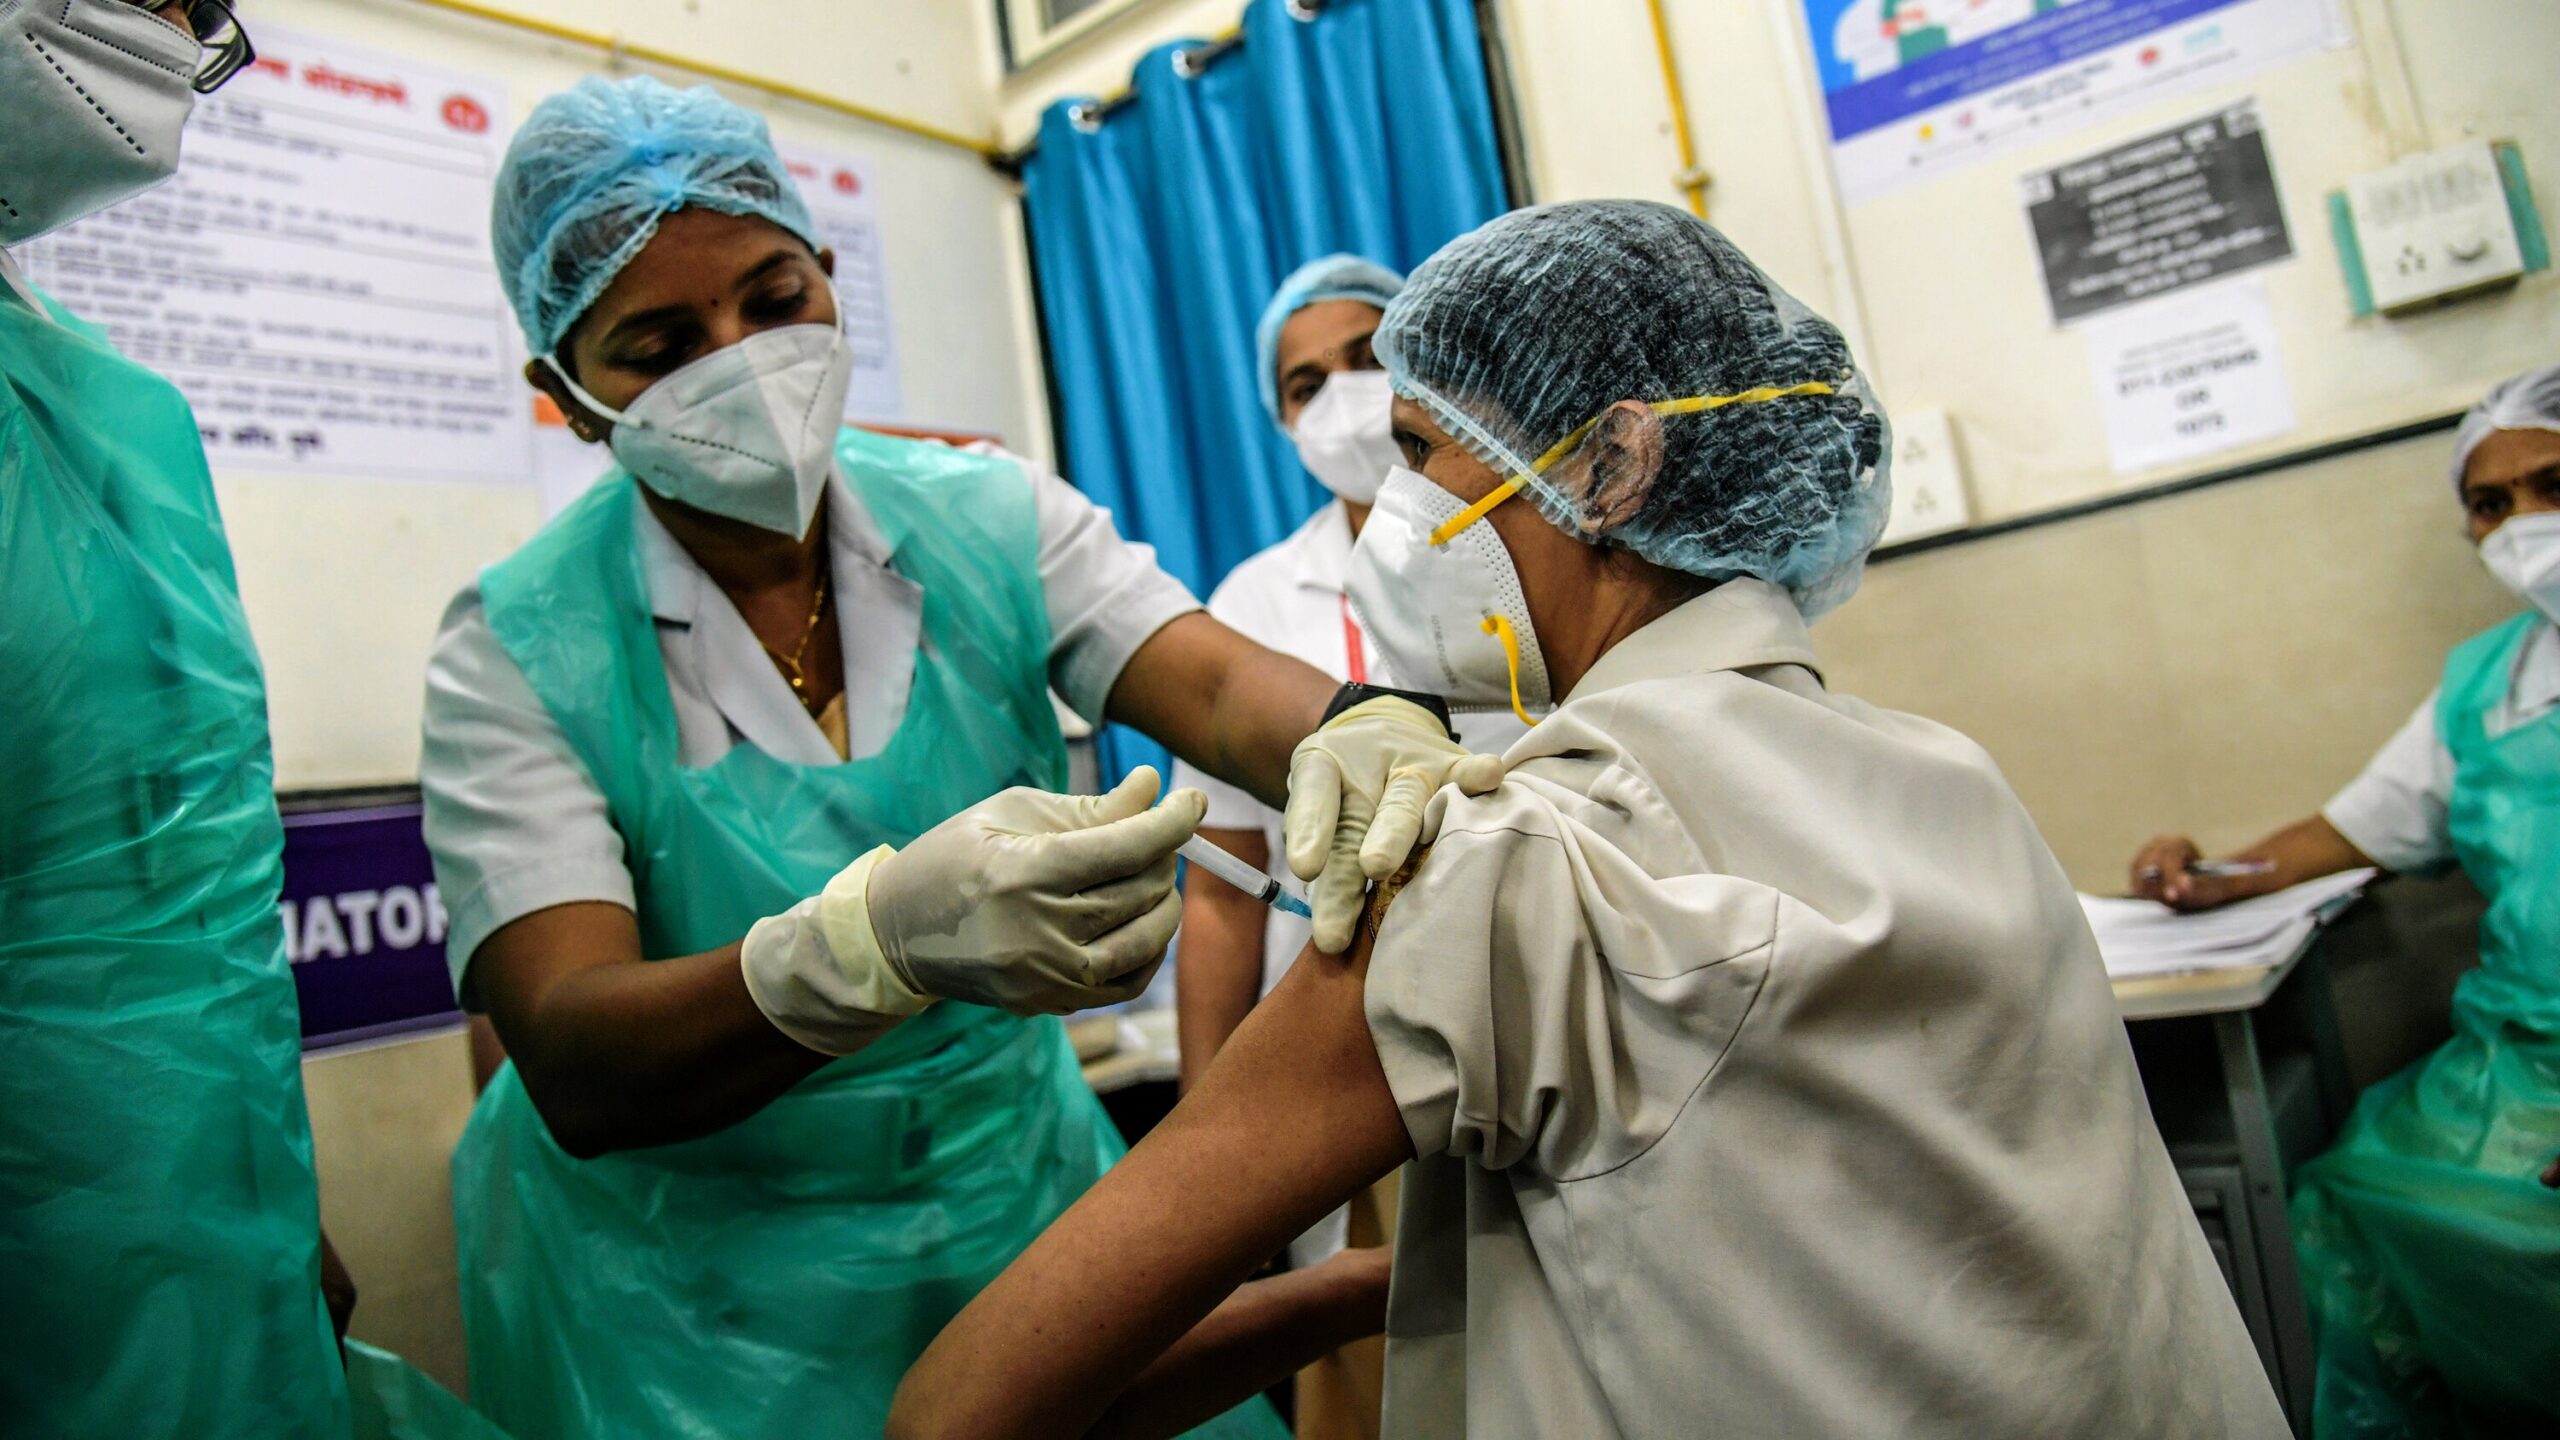 भारतमा कोरोना भाइरसविरुद्धको खोप लगाएका ५२ जनामा साइडइफेक्ट, १ जनाको अवस्था गम्भीर